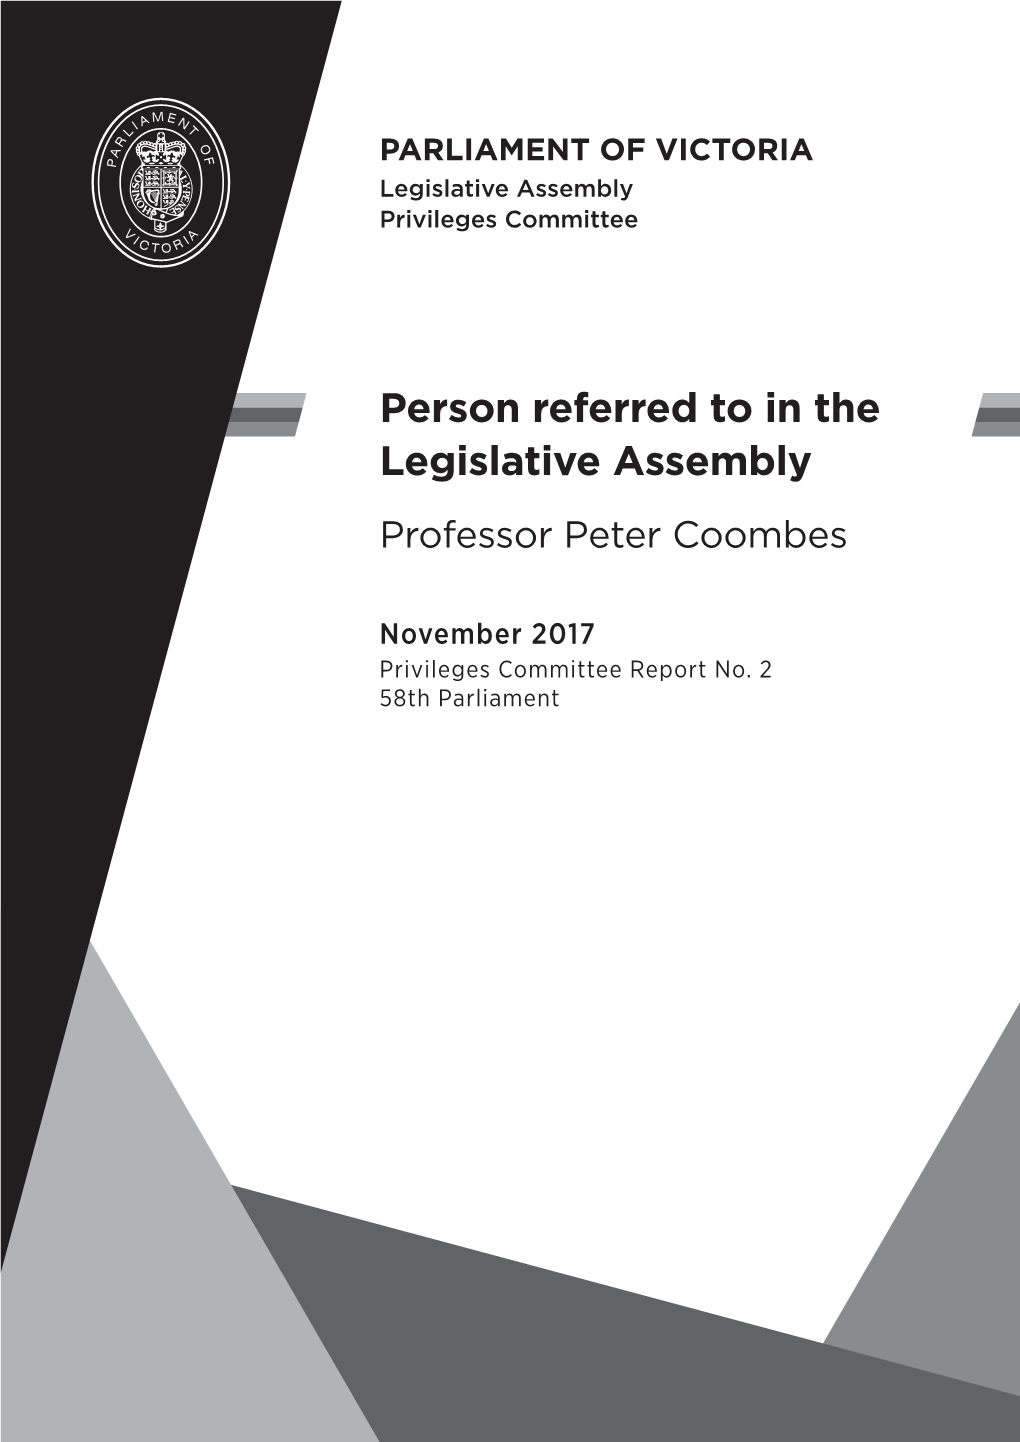 Professor Peter Coombes